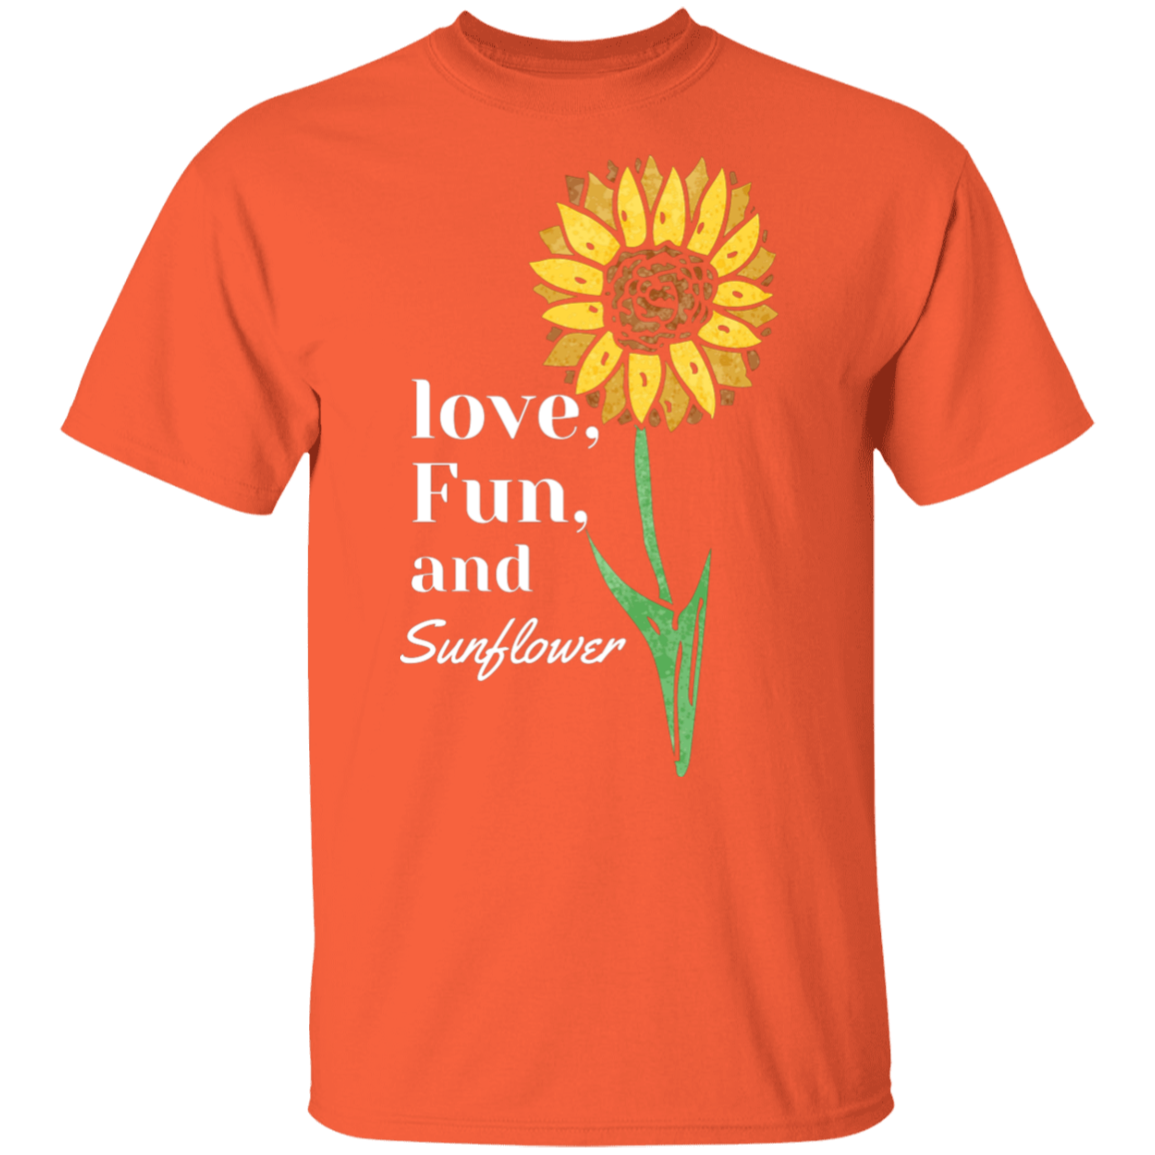 Love, Fun, Sunflower Youth T-shirt